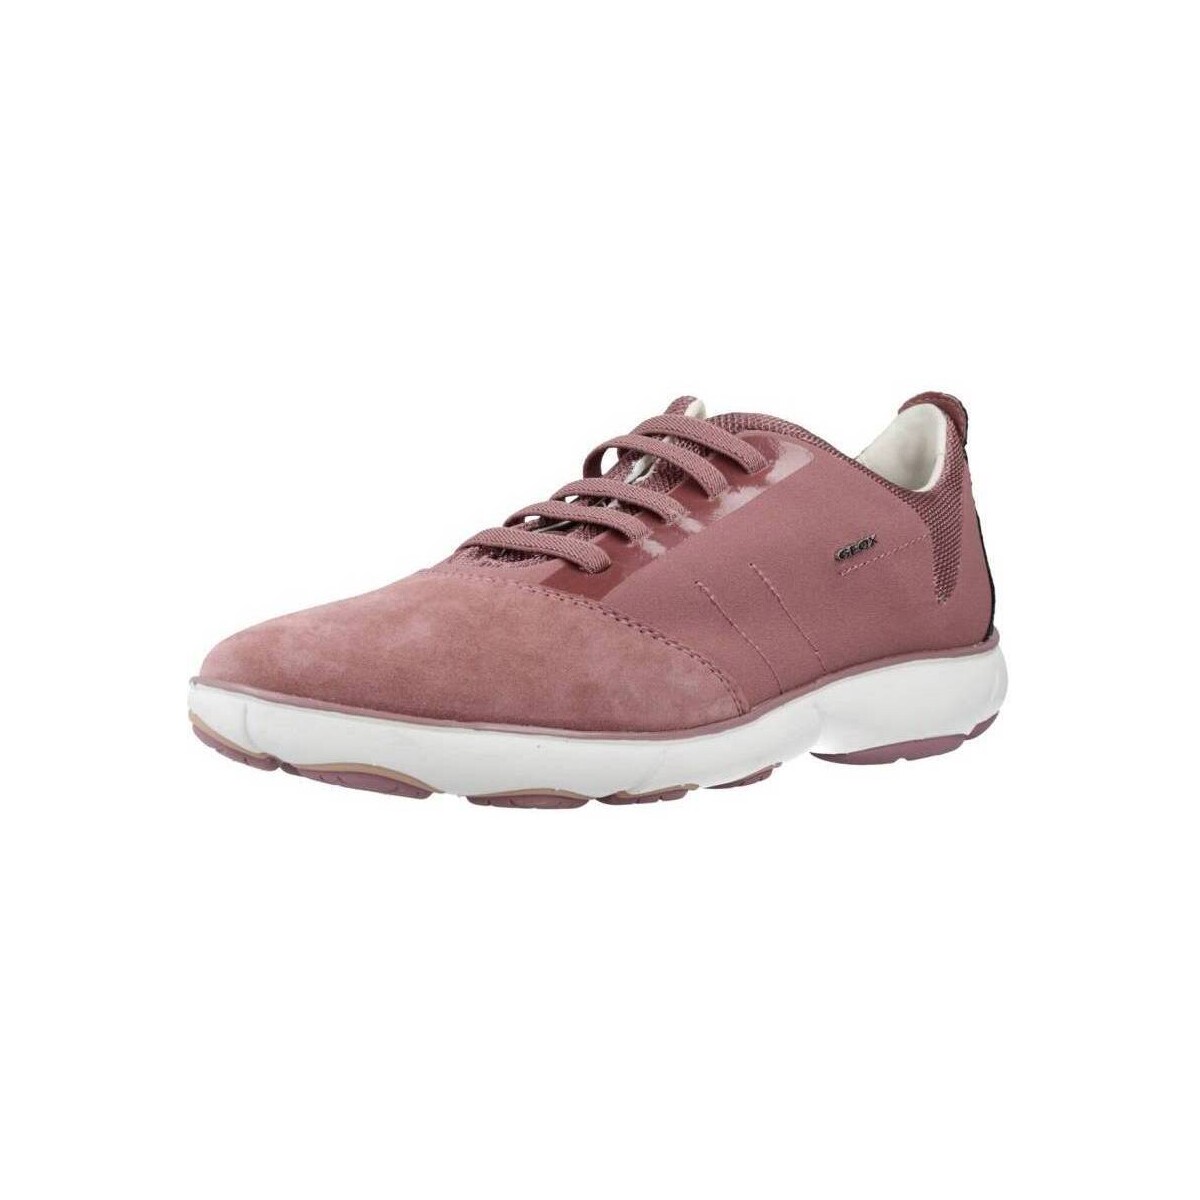 Cipők Női Divat edzőcipők Geox D NEBULA A Rózsaszín